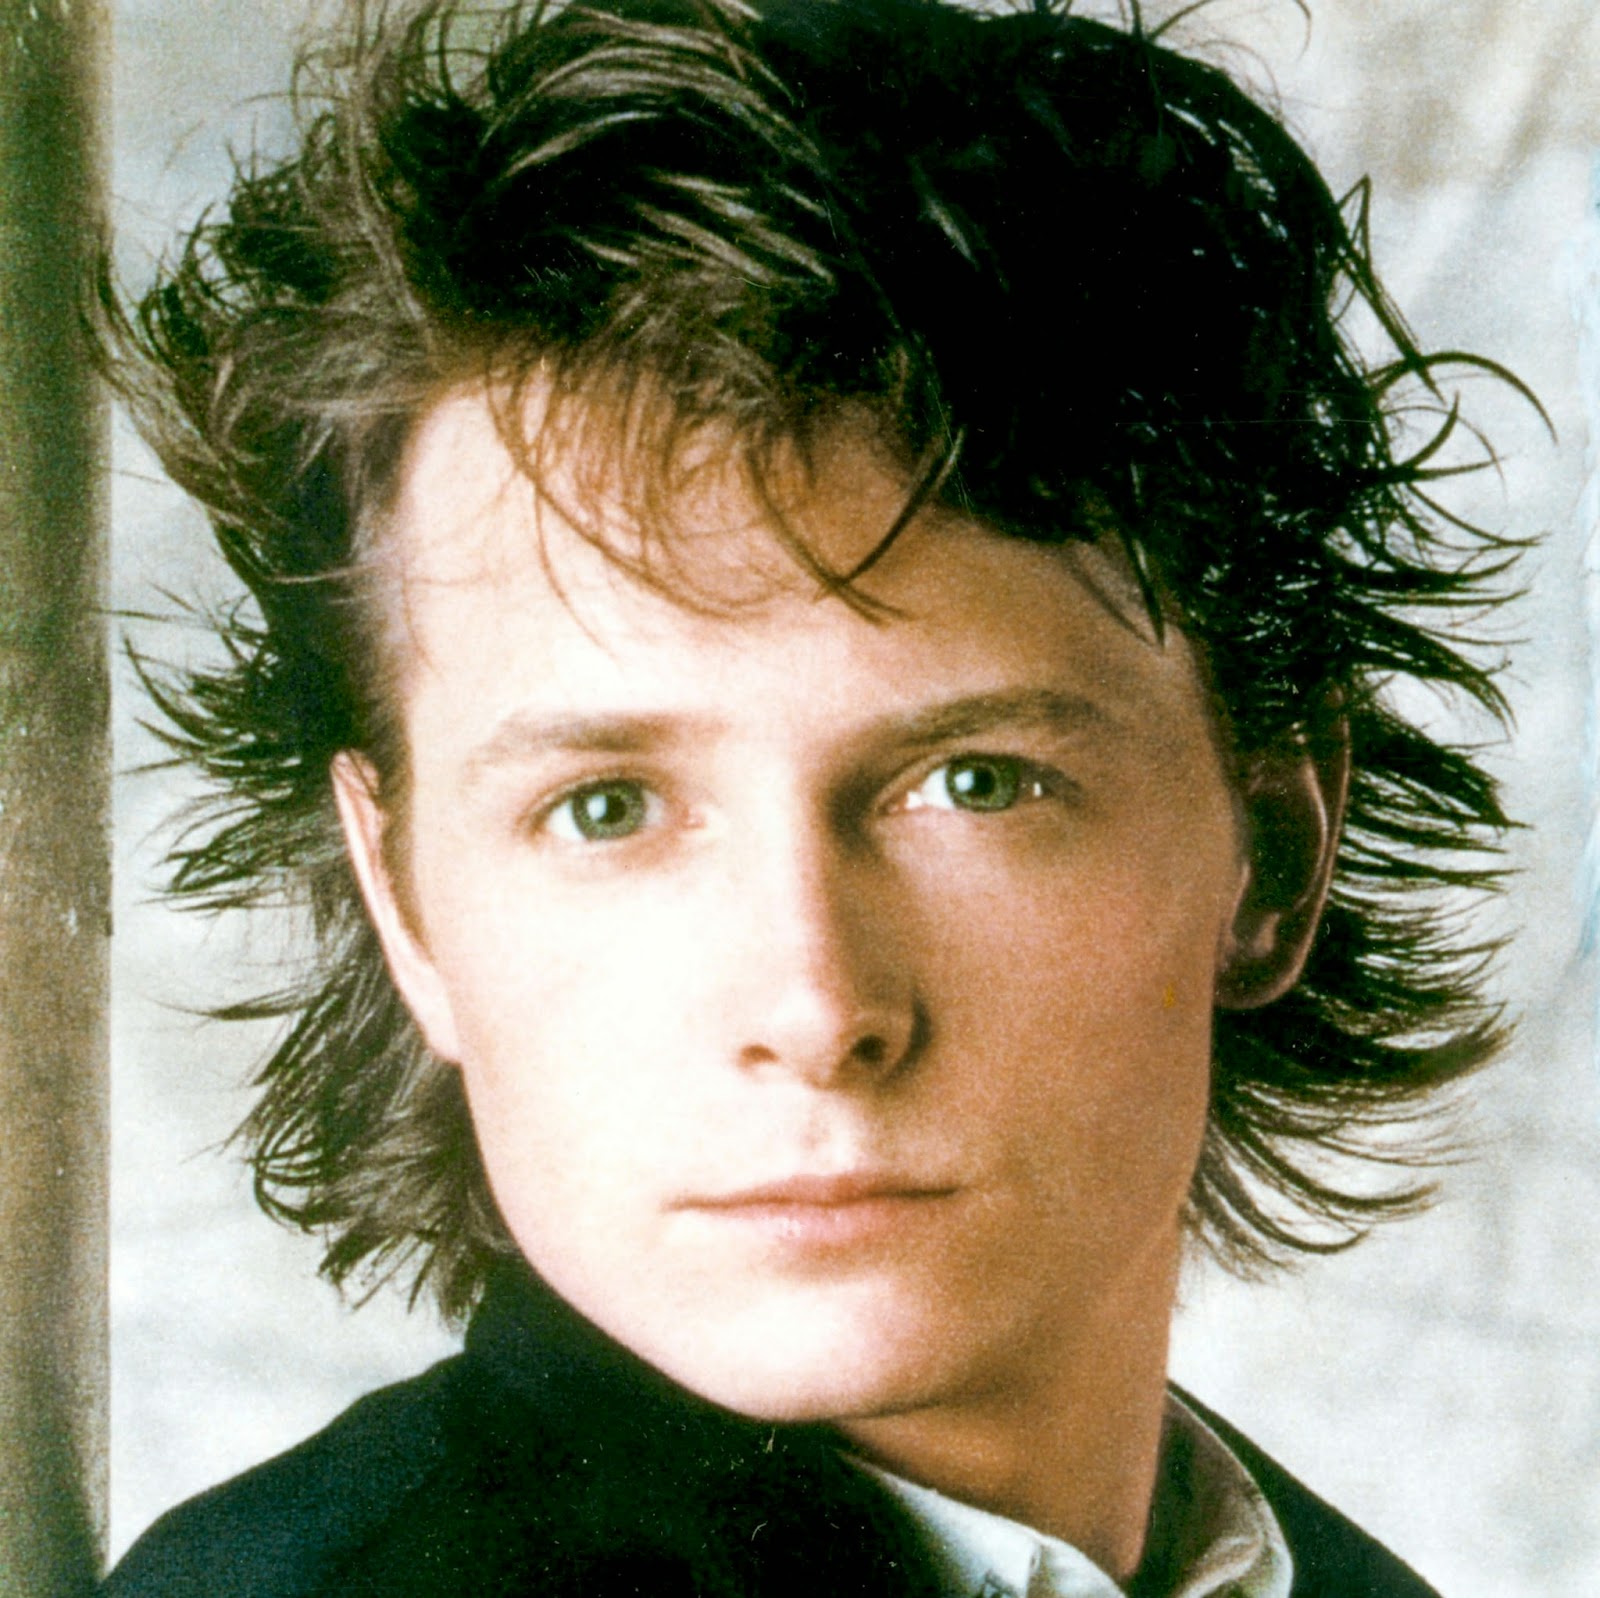 Michael J. Fox.